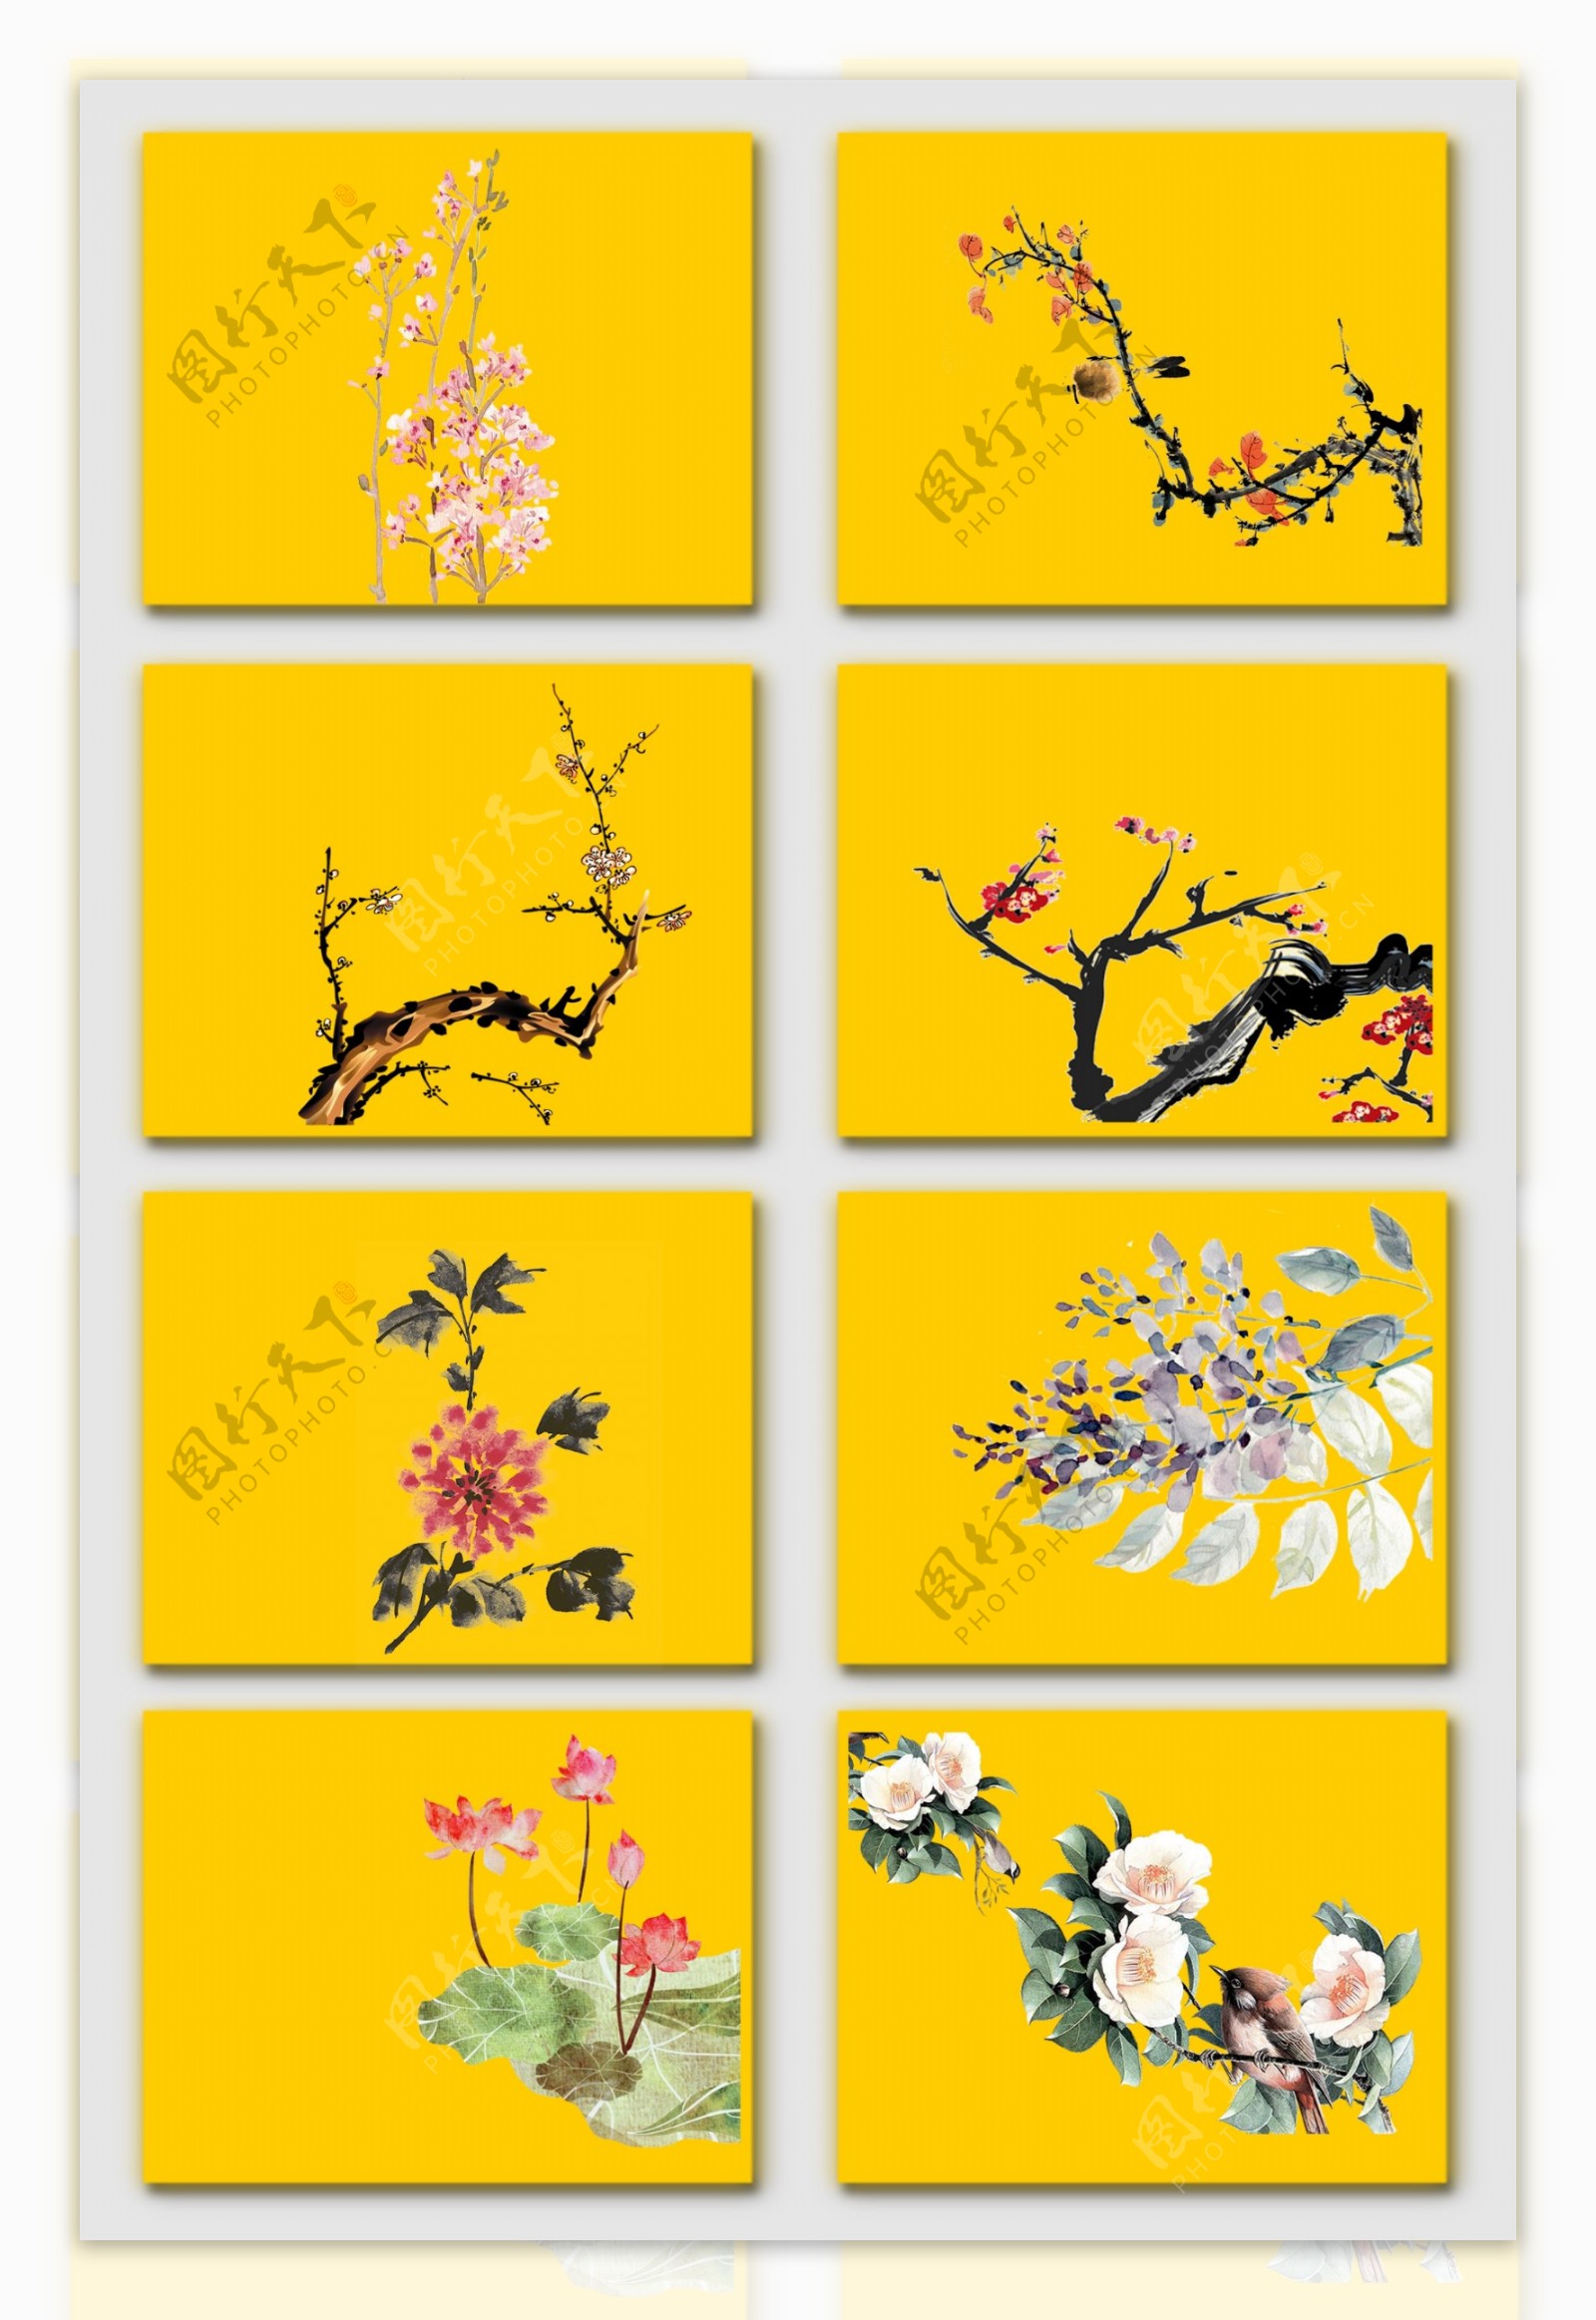 免抠中国水墨画花卉植物